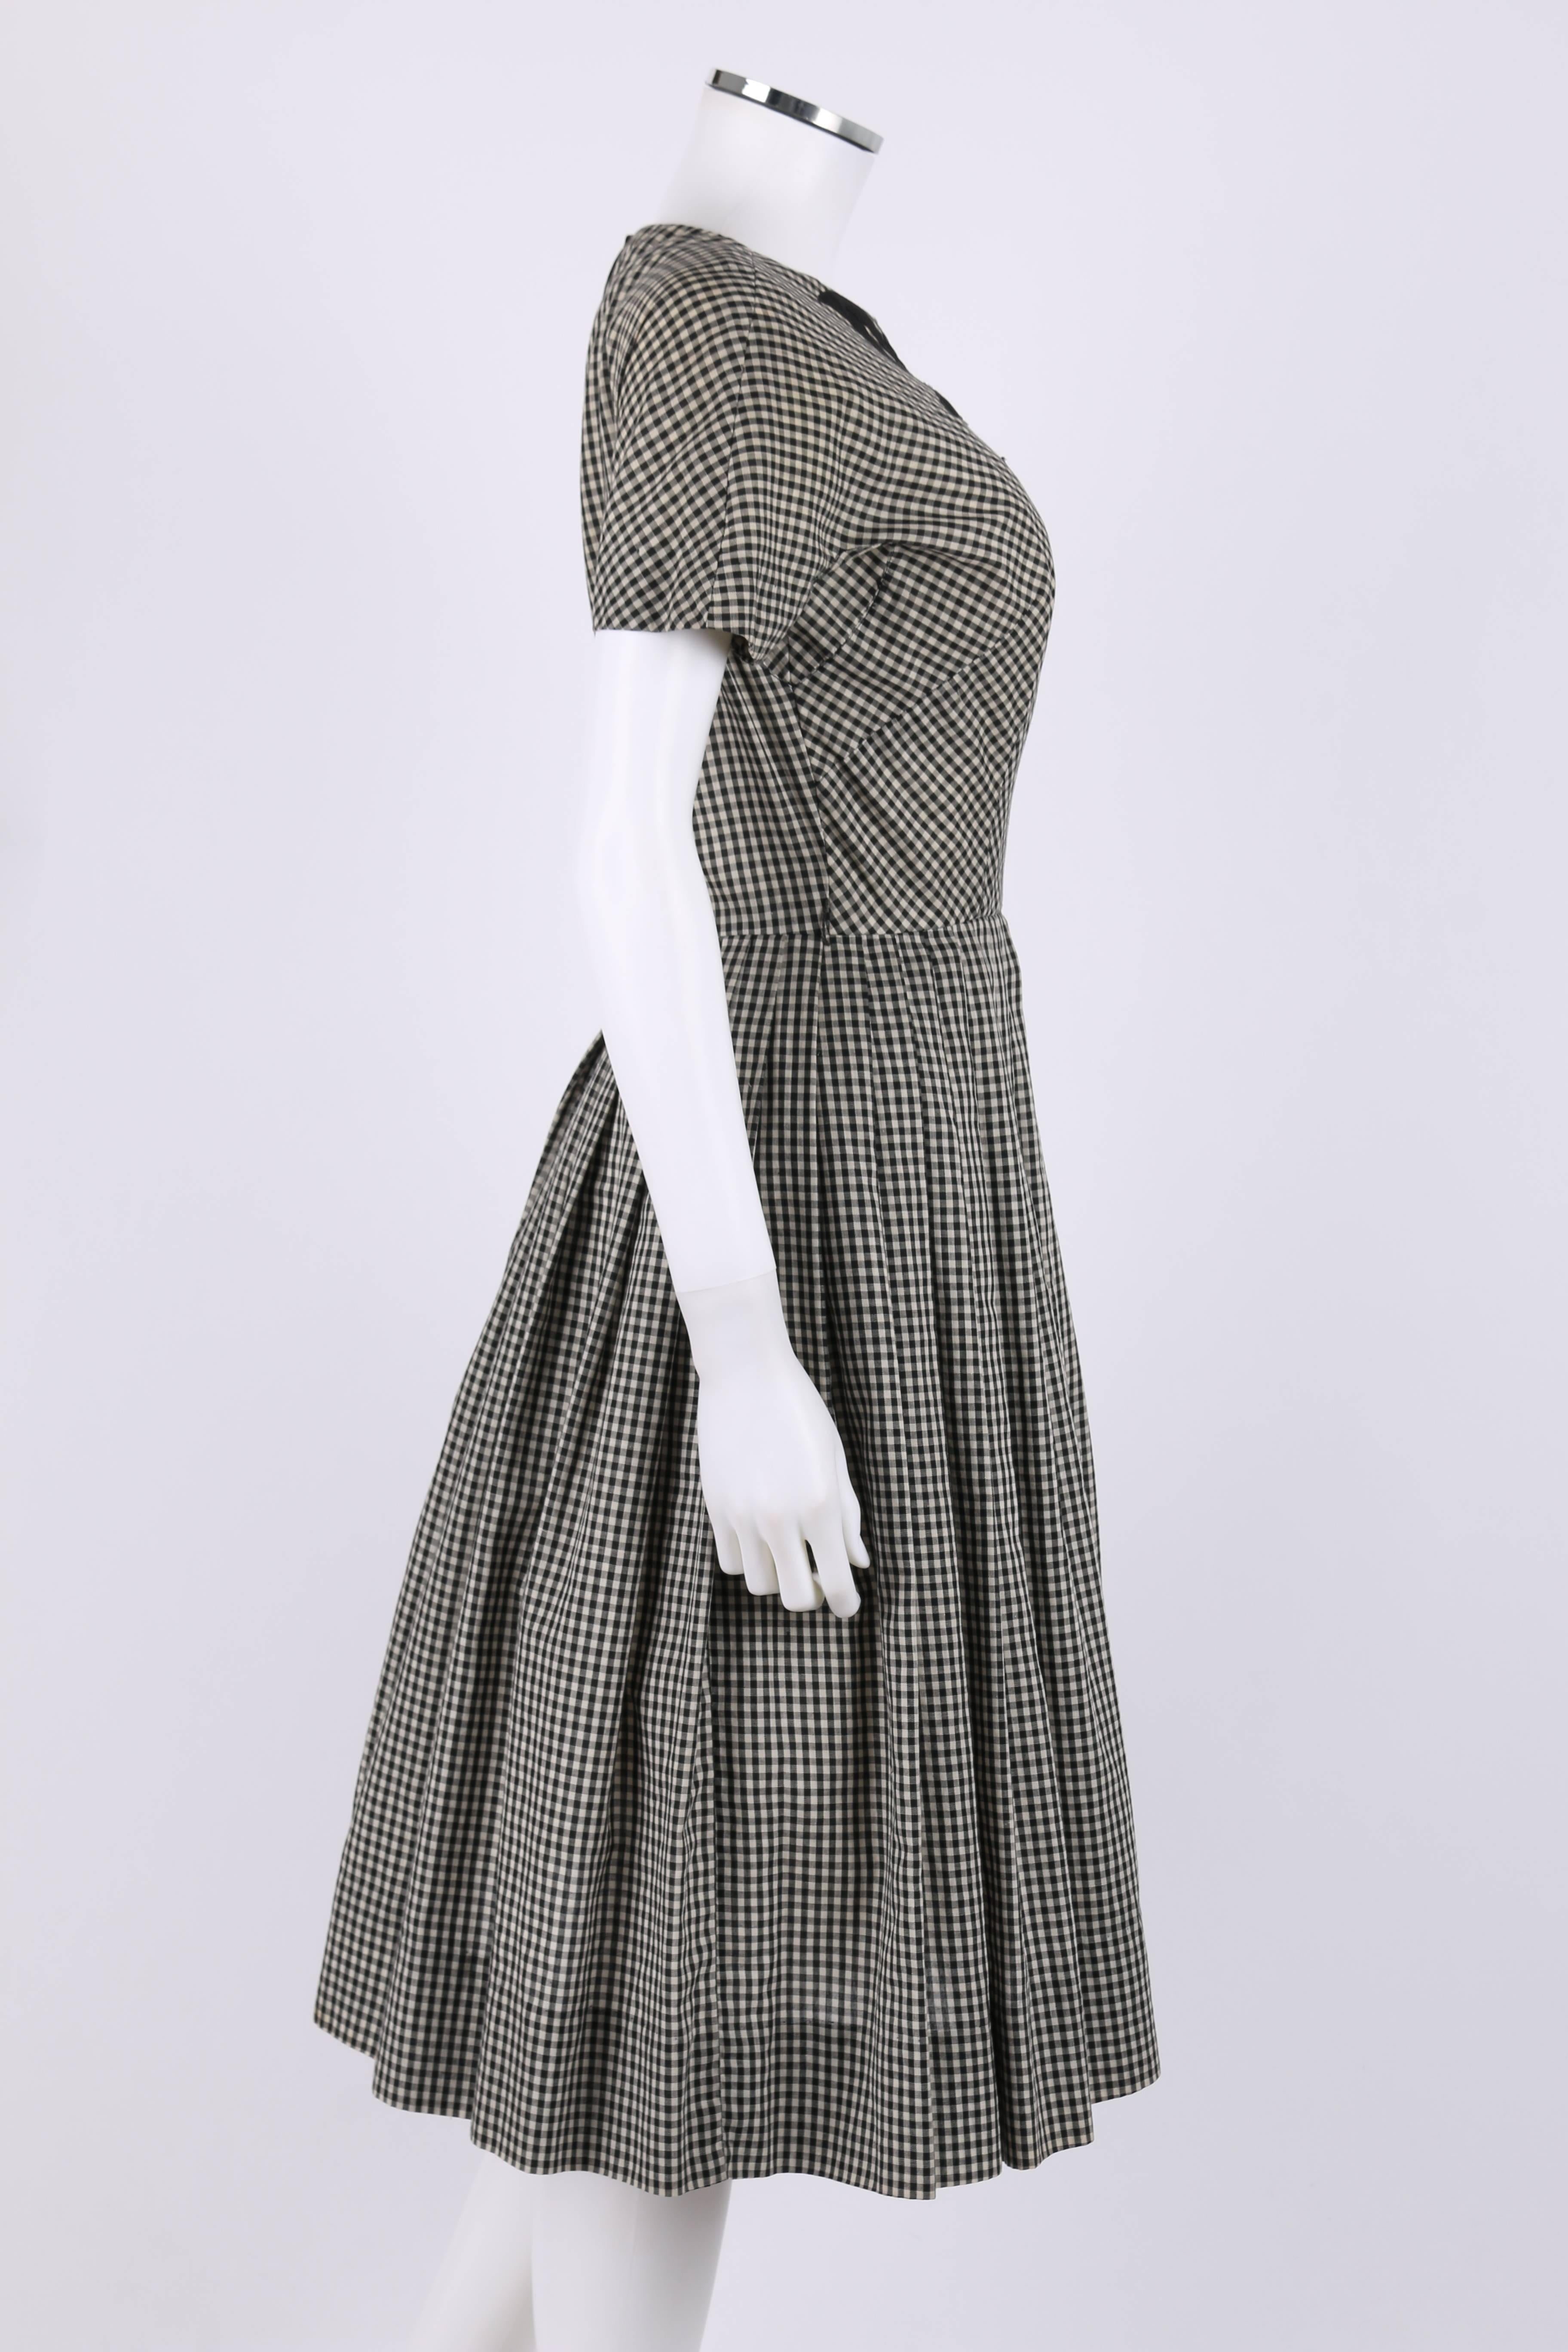 Gray JEANNE DURRELL c.1950's Black White Gingham Avant Garde Applique Day Dress